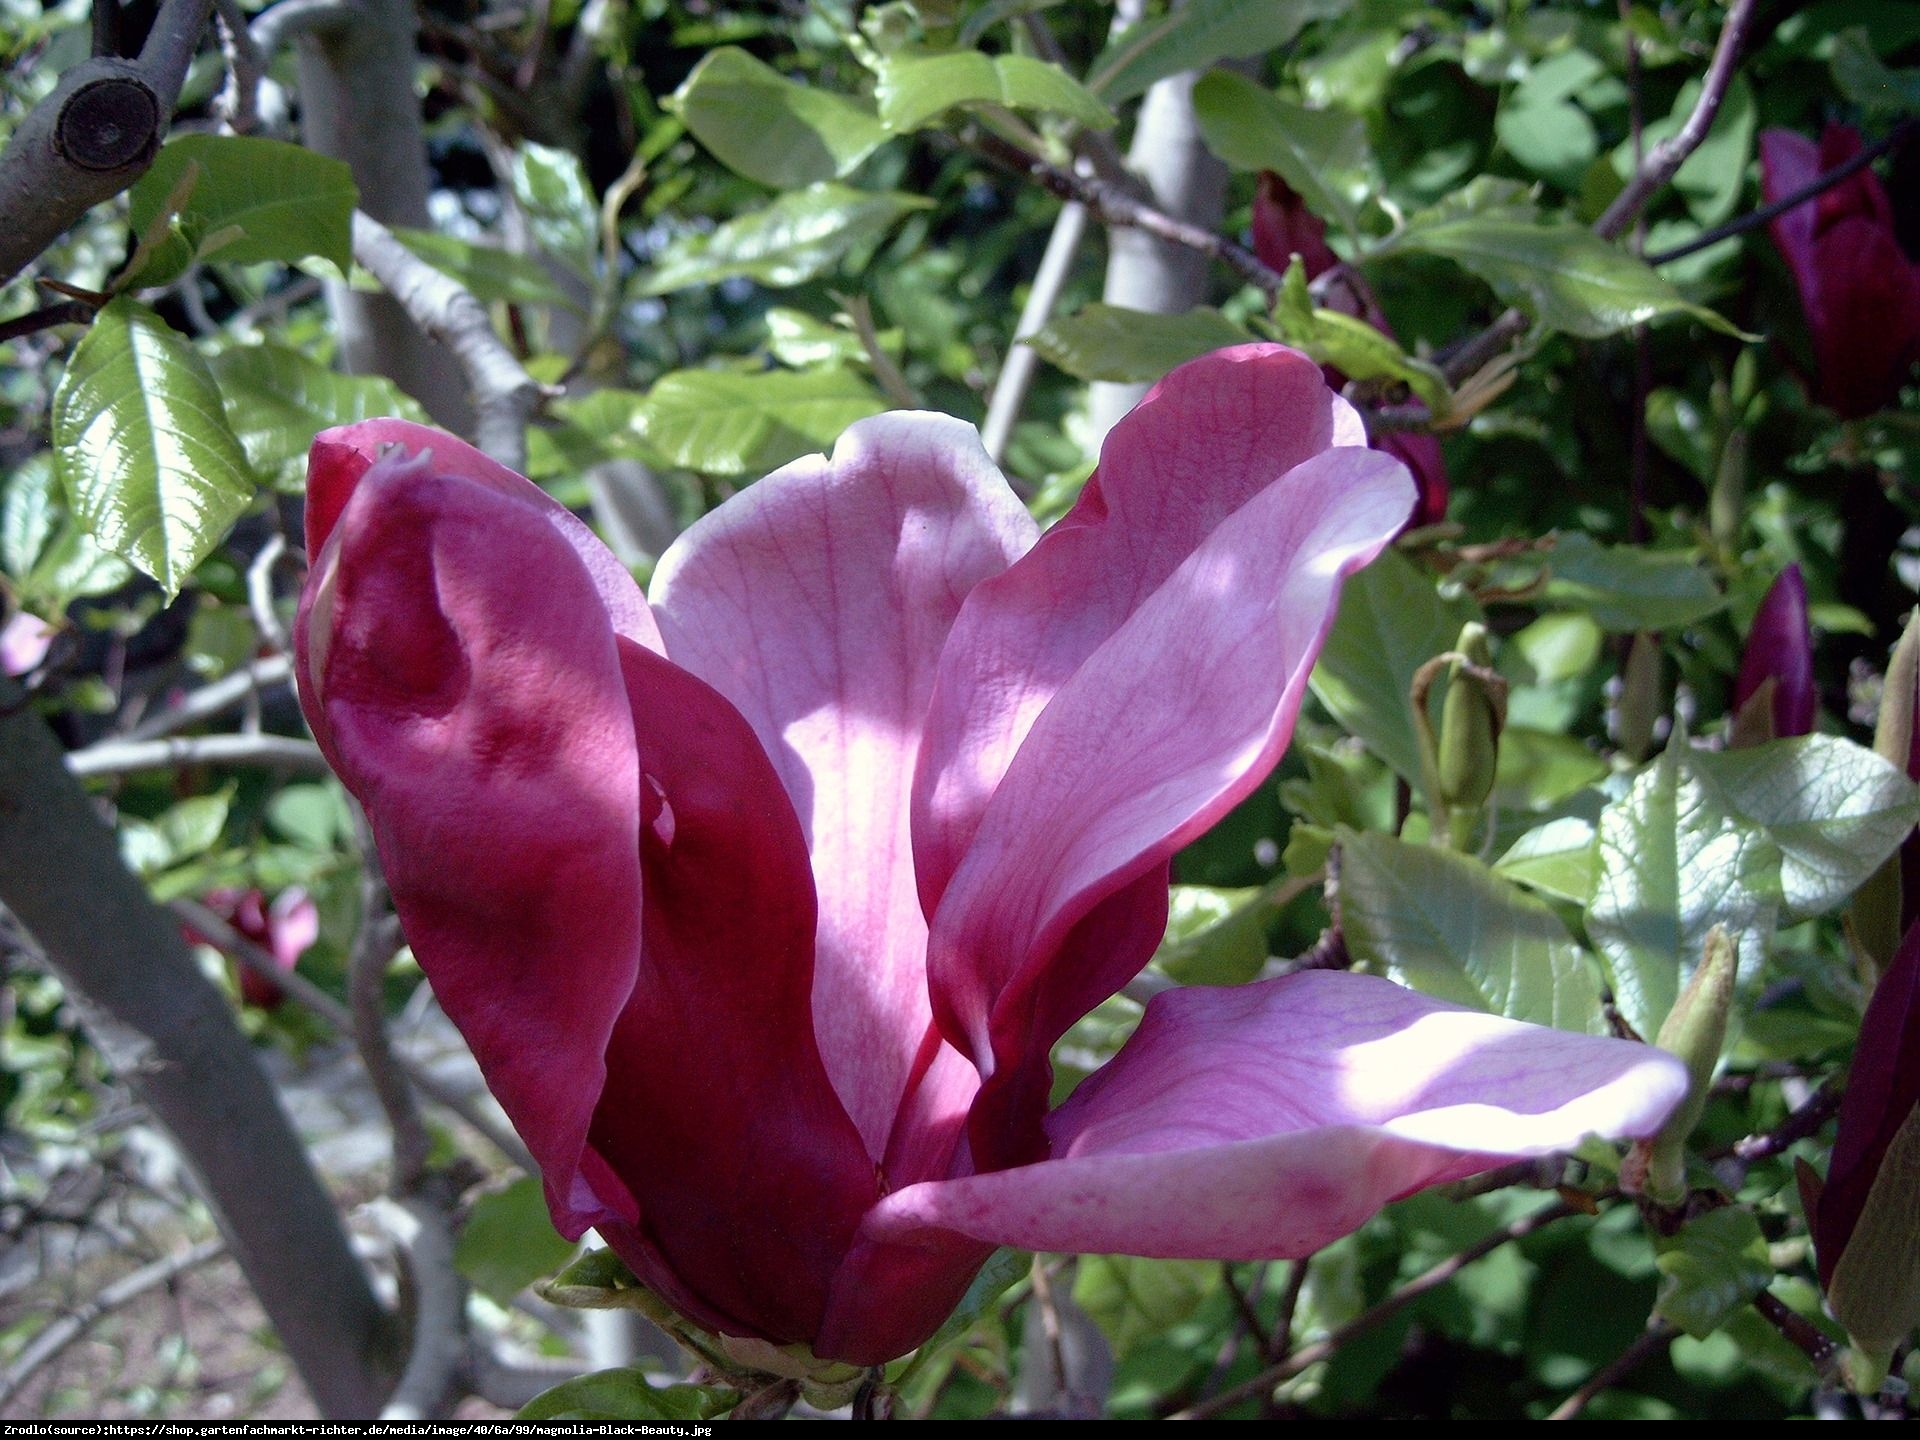 Magnolia Black Beauty - Magnolia Black Beauty